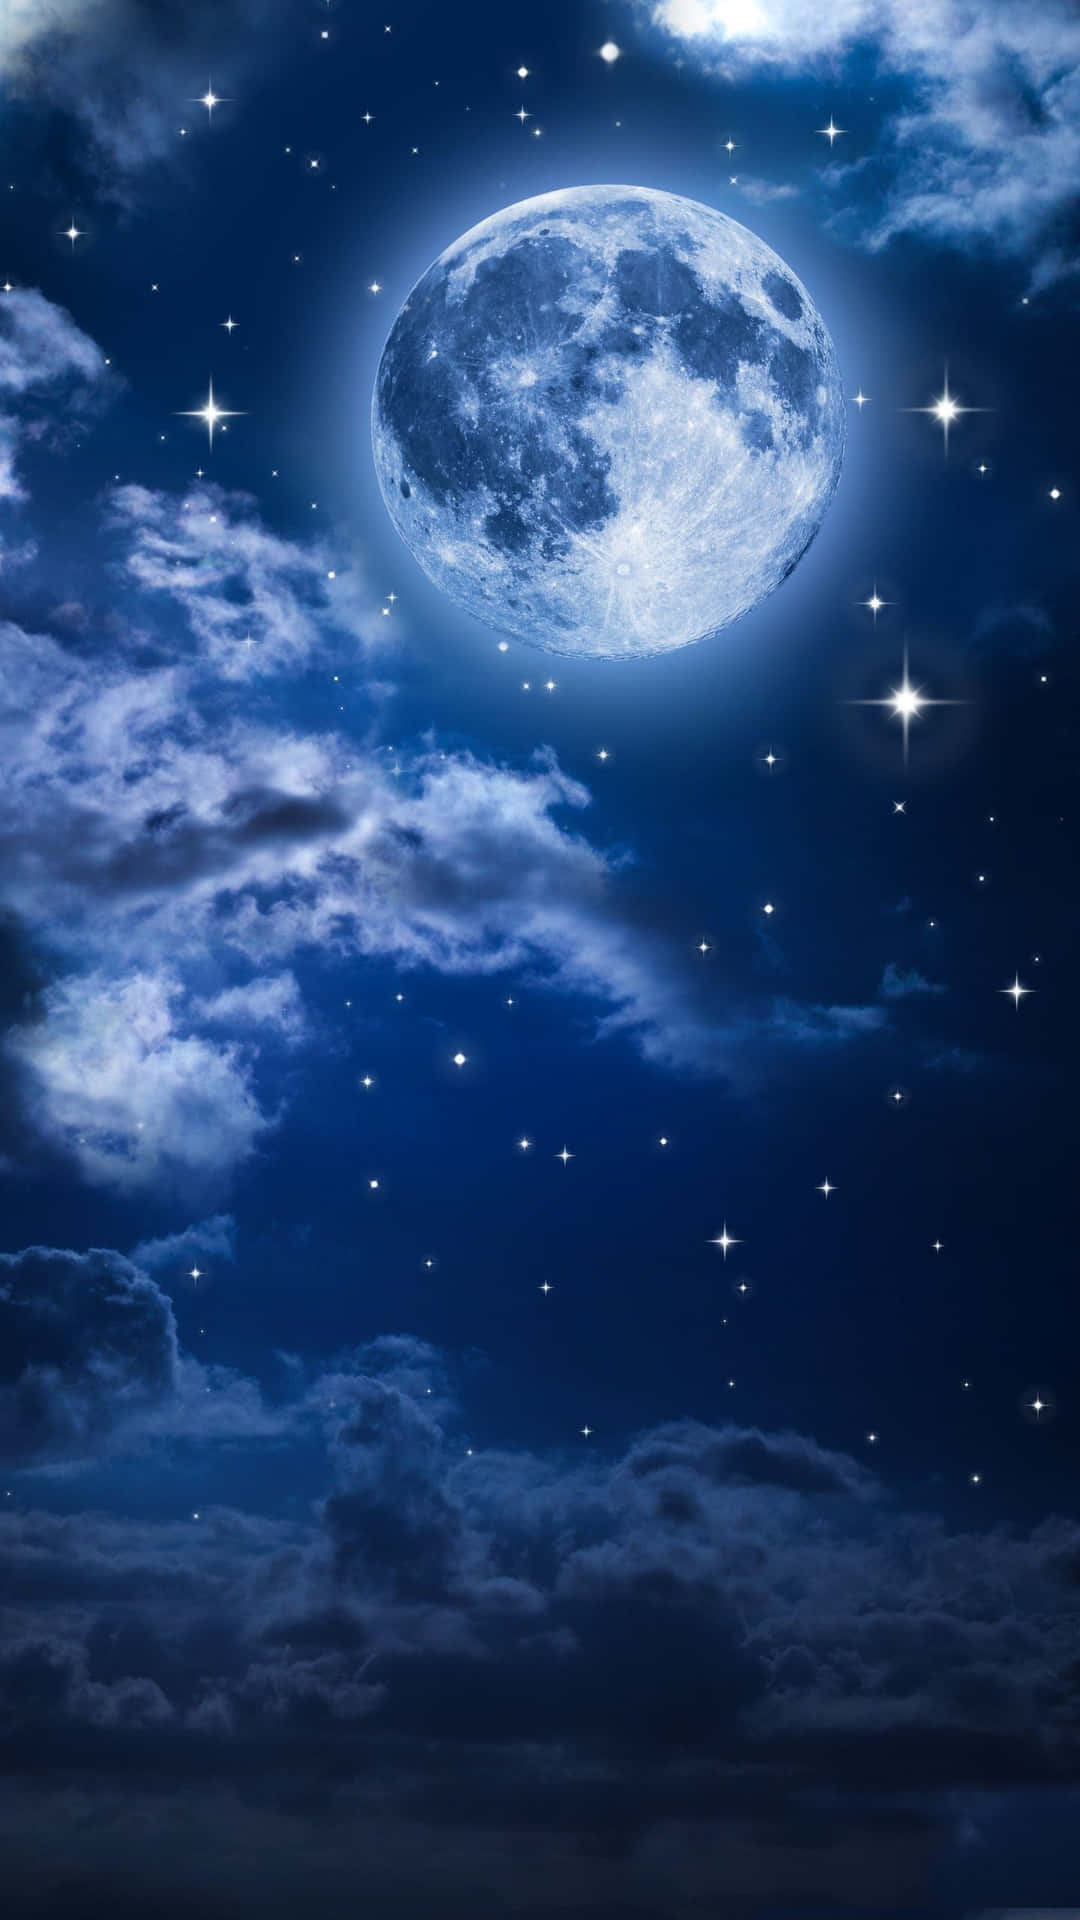 Imagenrealista Del Cielo Nocturno Con La Luna.